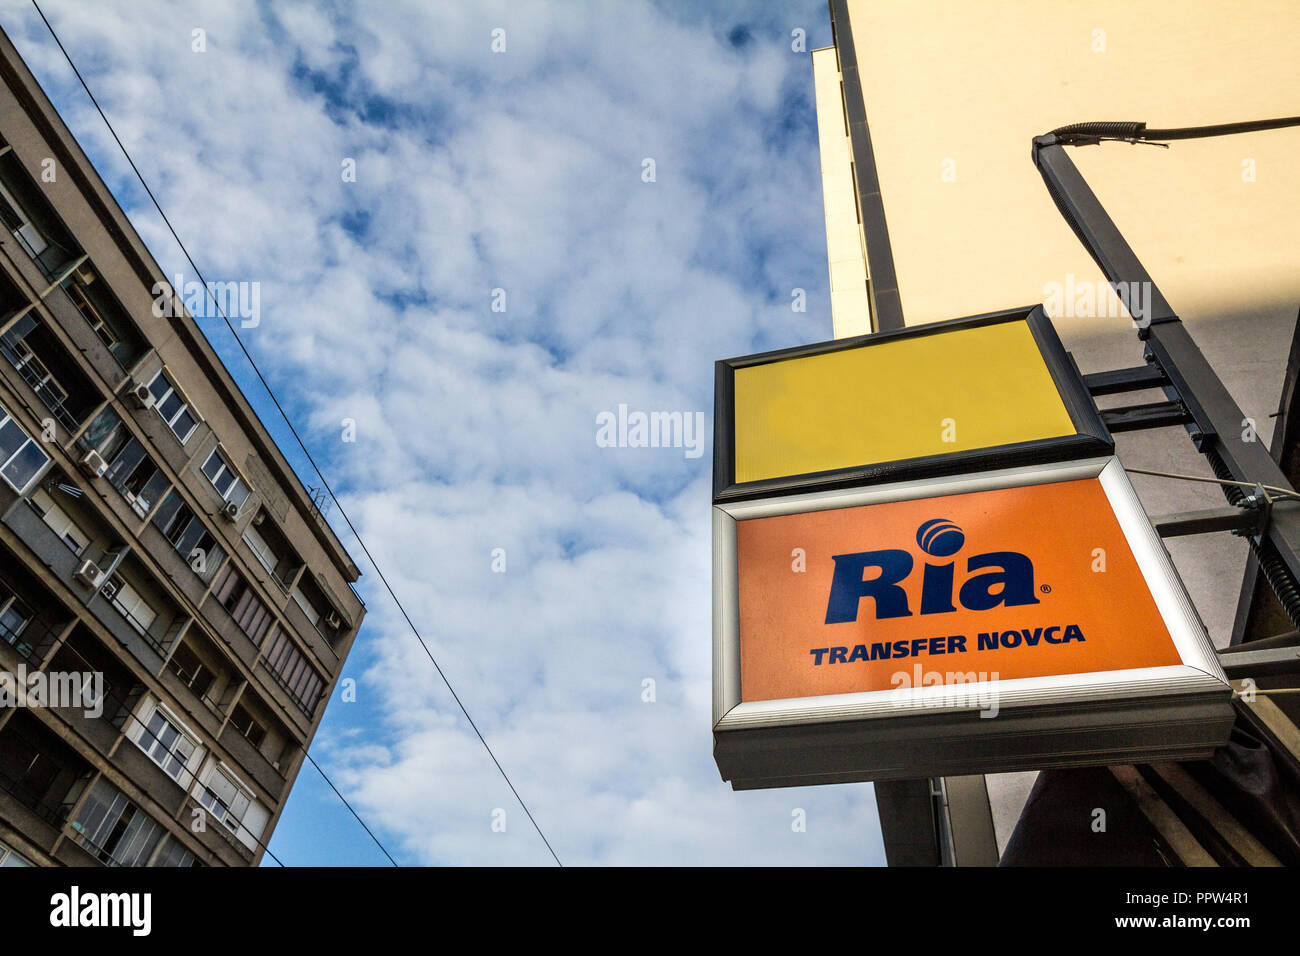 BELGRADE, SERBIE - Septembre 27, 2018 : Ria logo sur leur principale Bureau de change pour Belgrade. Ria est une entreprise spécialisée de services financiers Banque D'Images